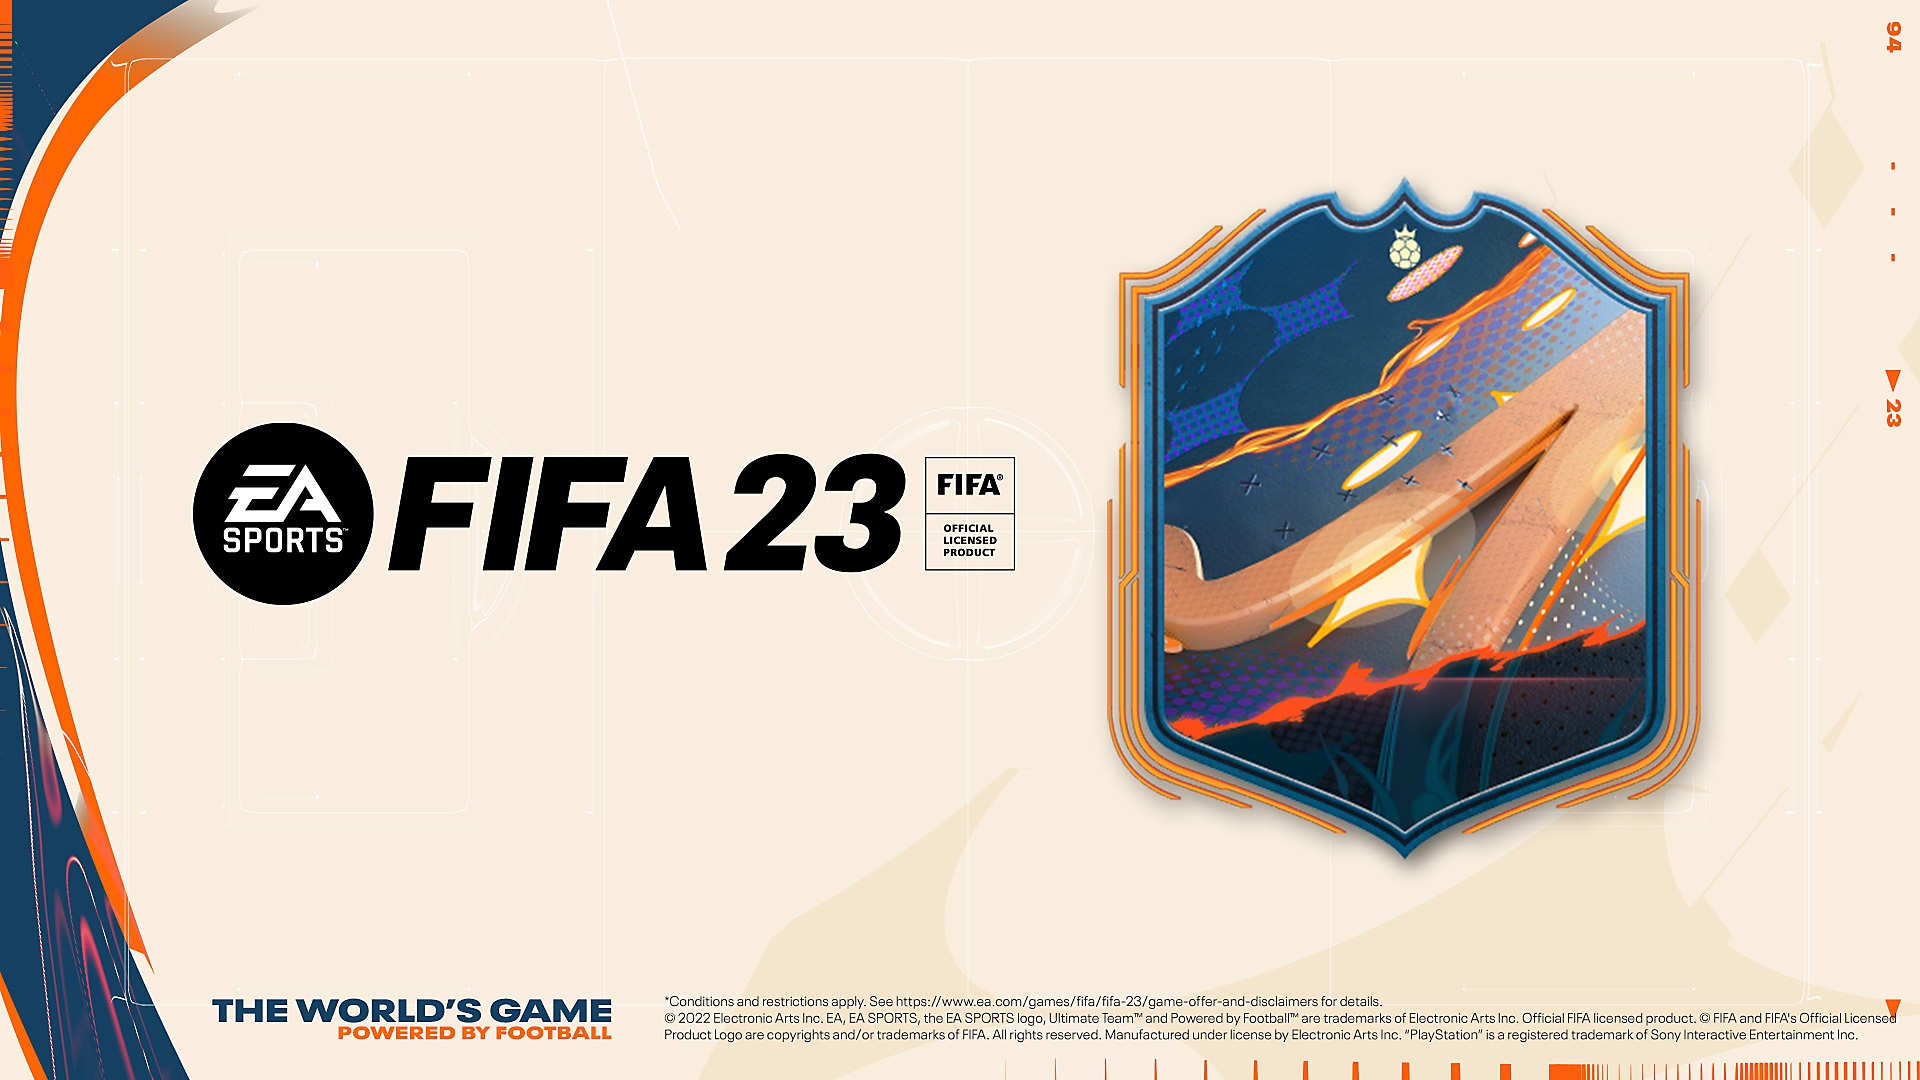 Ilustrações de pré-venda do EA Sports FIFA 23 com um emblema multicolorido e o logo FIFA 23